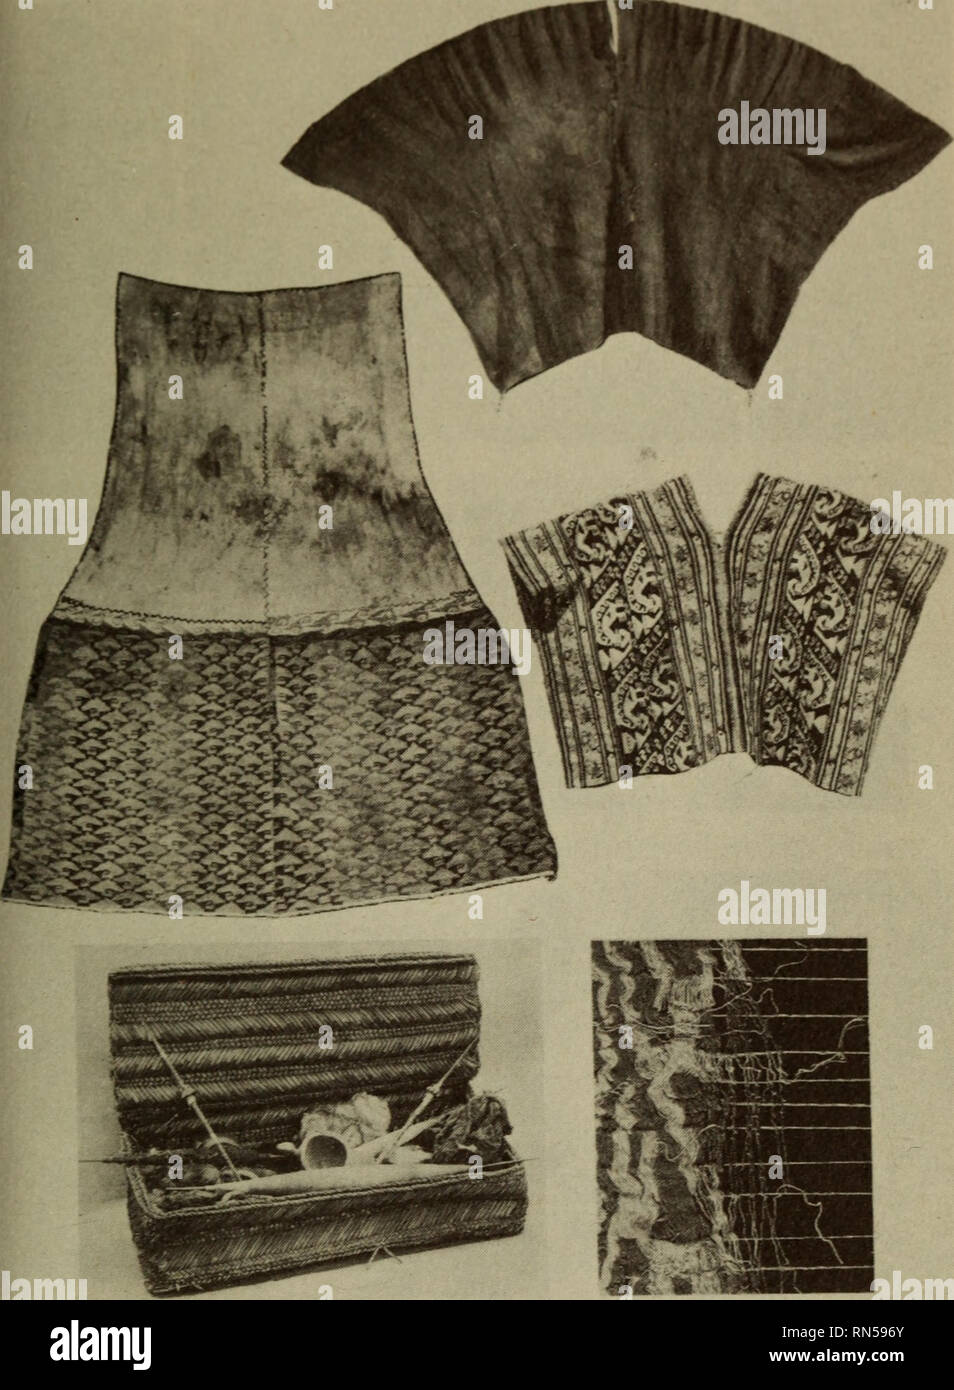 Historia de la cultura andina. Los Incas, los indios de América del Sur.  [34] Poncho camisa, insertando en forma adicional en el centro de la  deformación de la tela (norte de